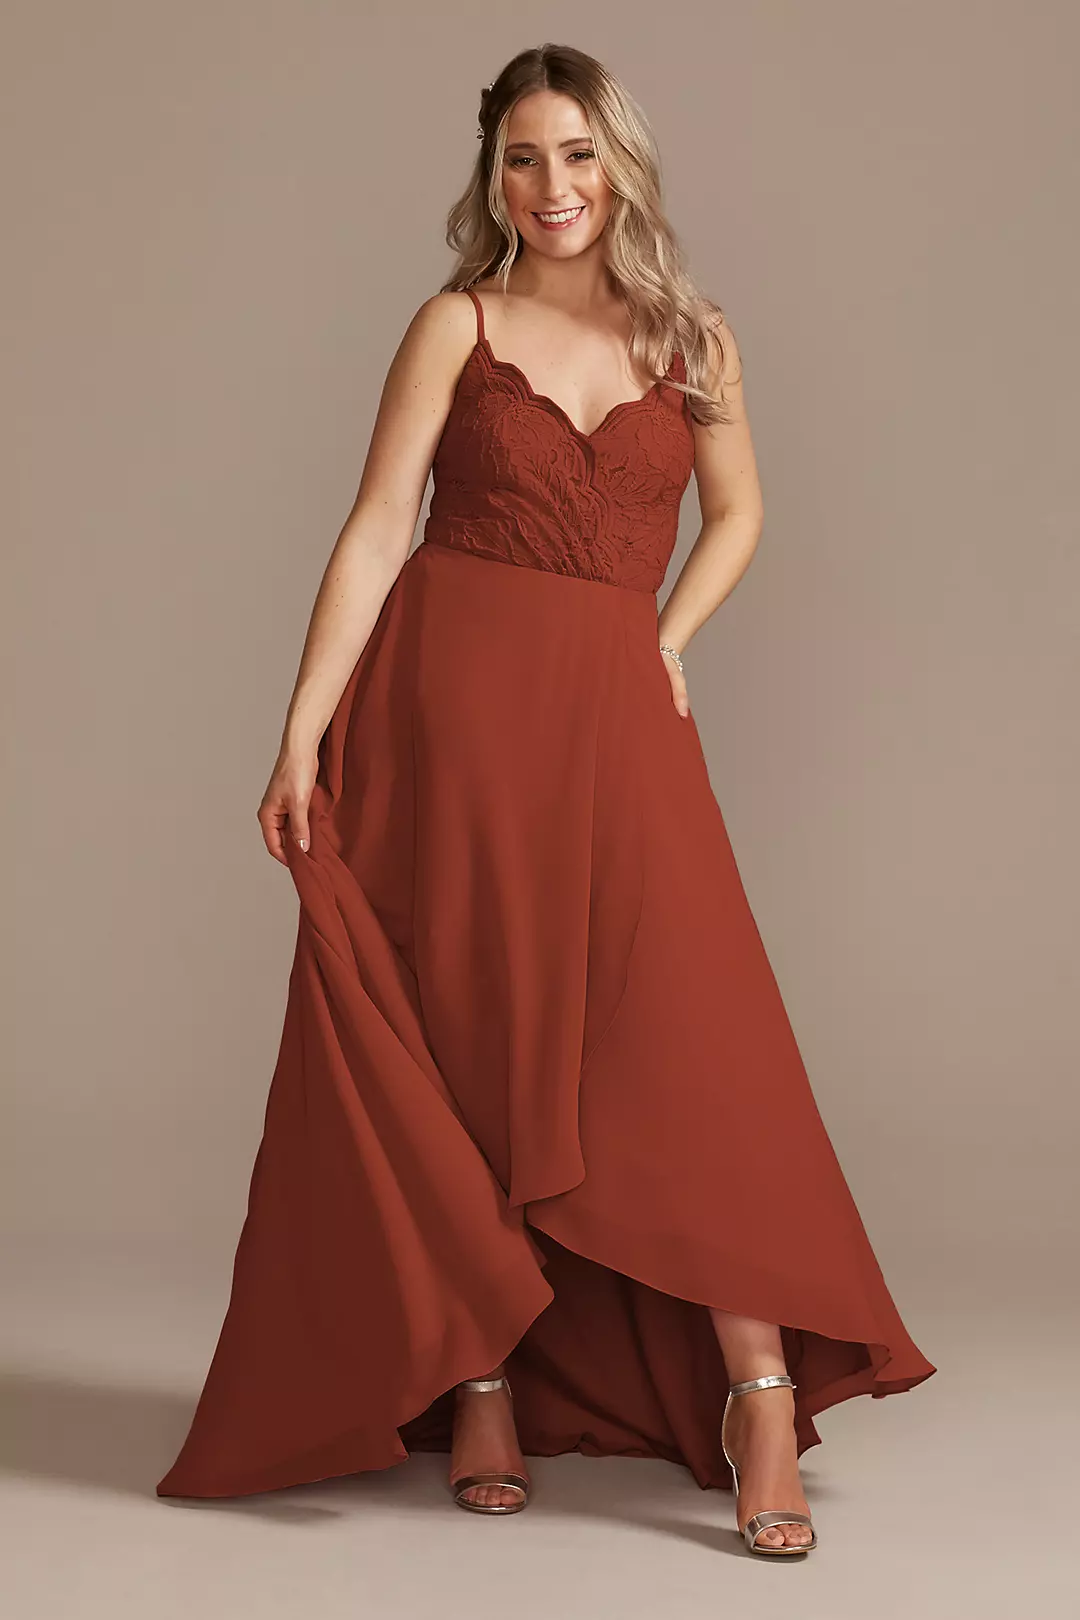 Lace Chiffon High-Low Dress Image